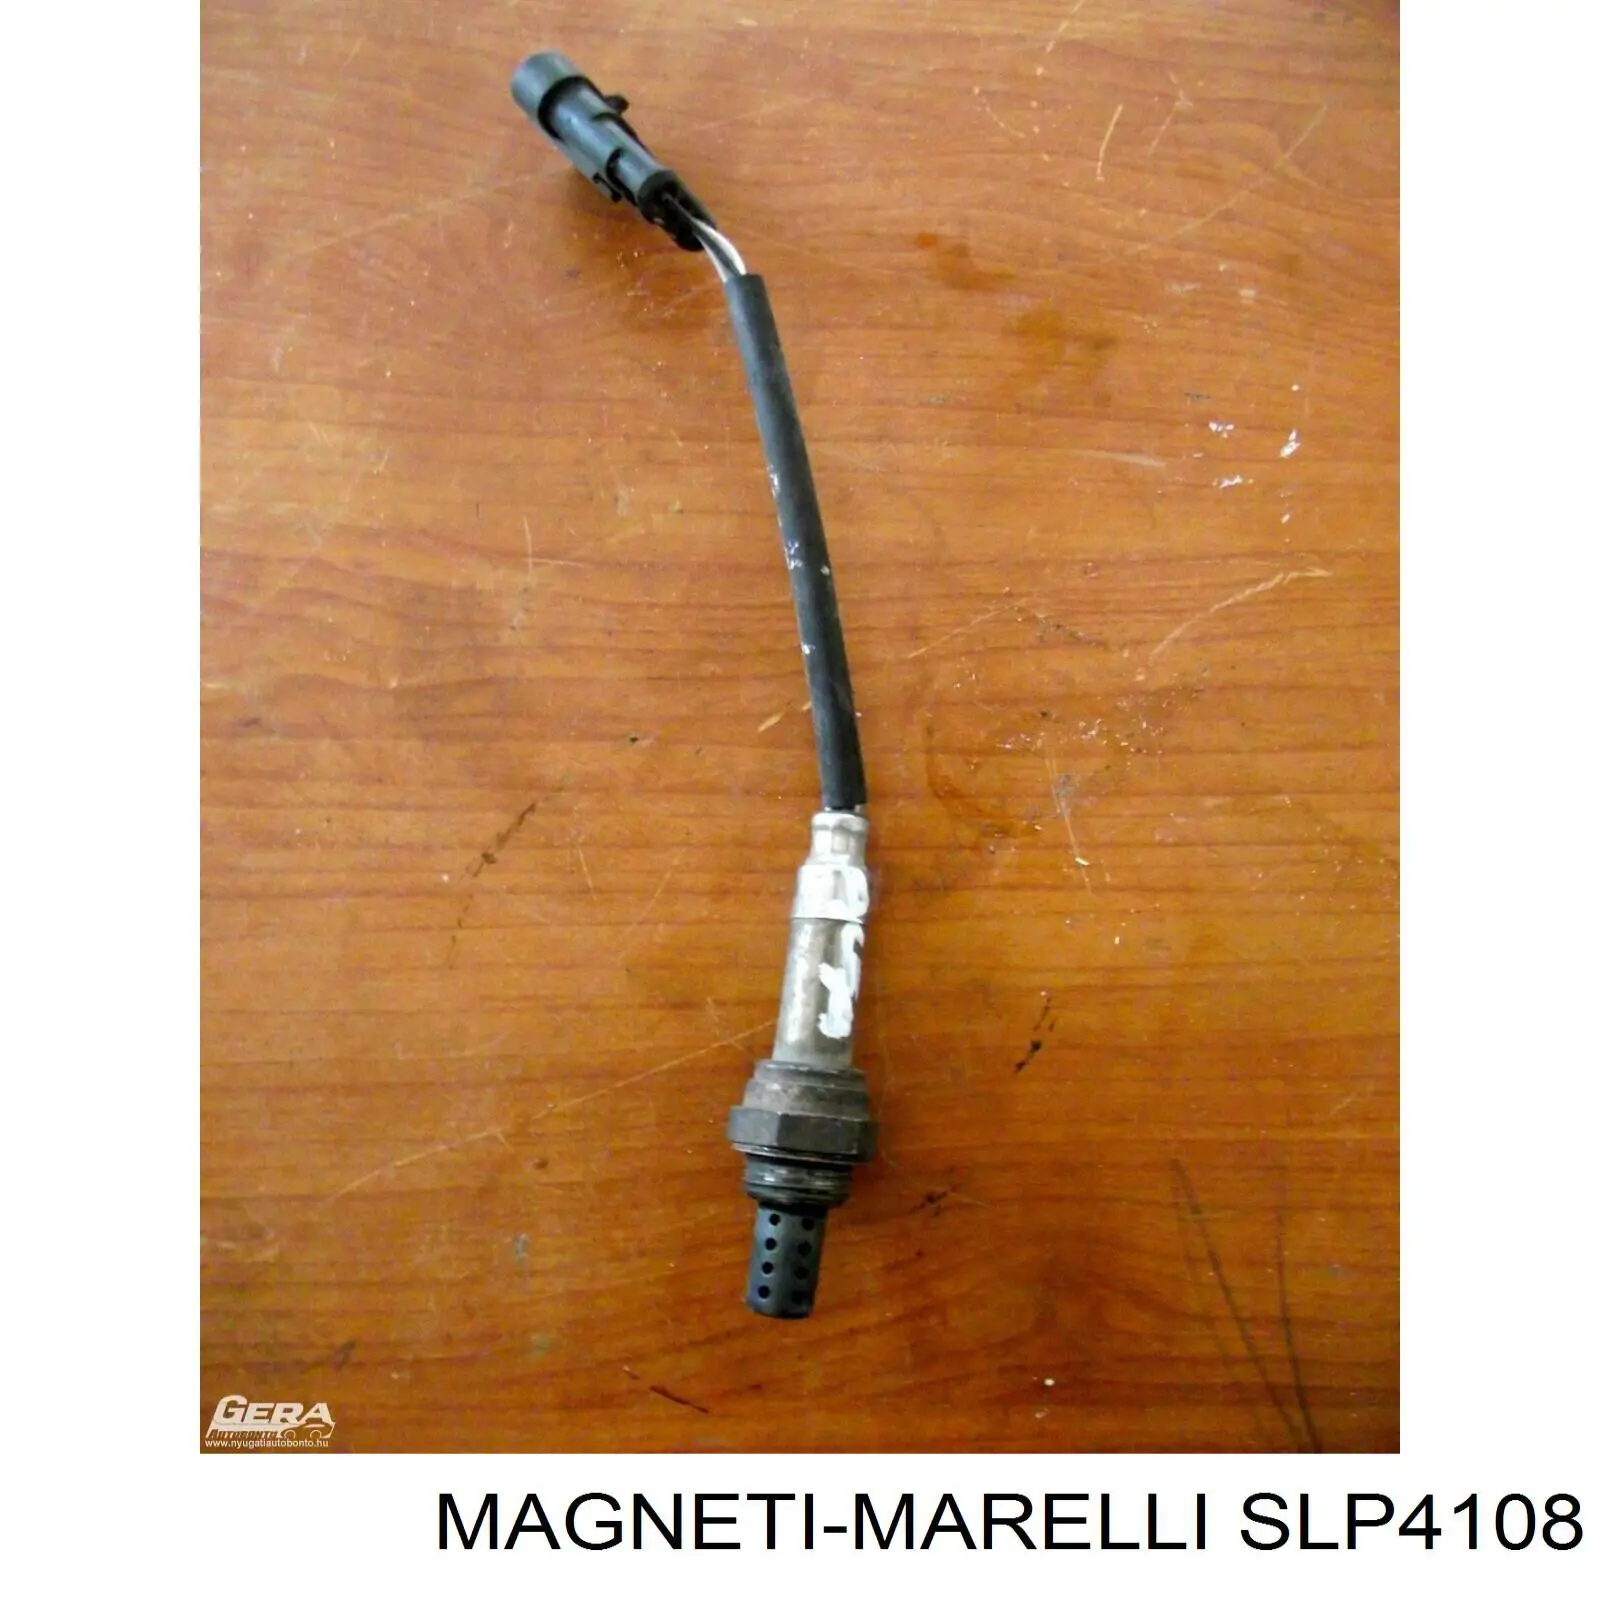 Sonda Lambda Sensor De Oxigeno Para Catalizador SLP4108 Magneti Marelli